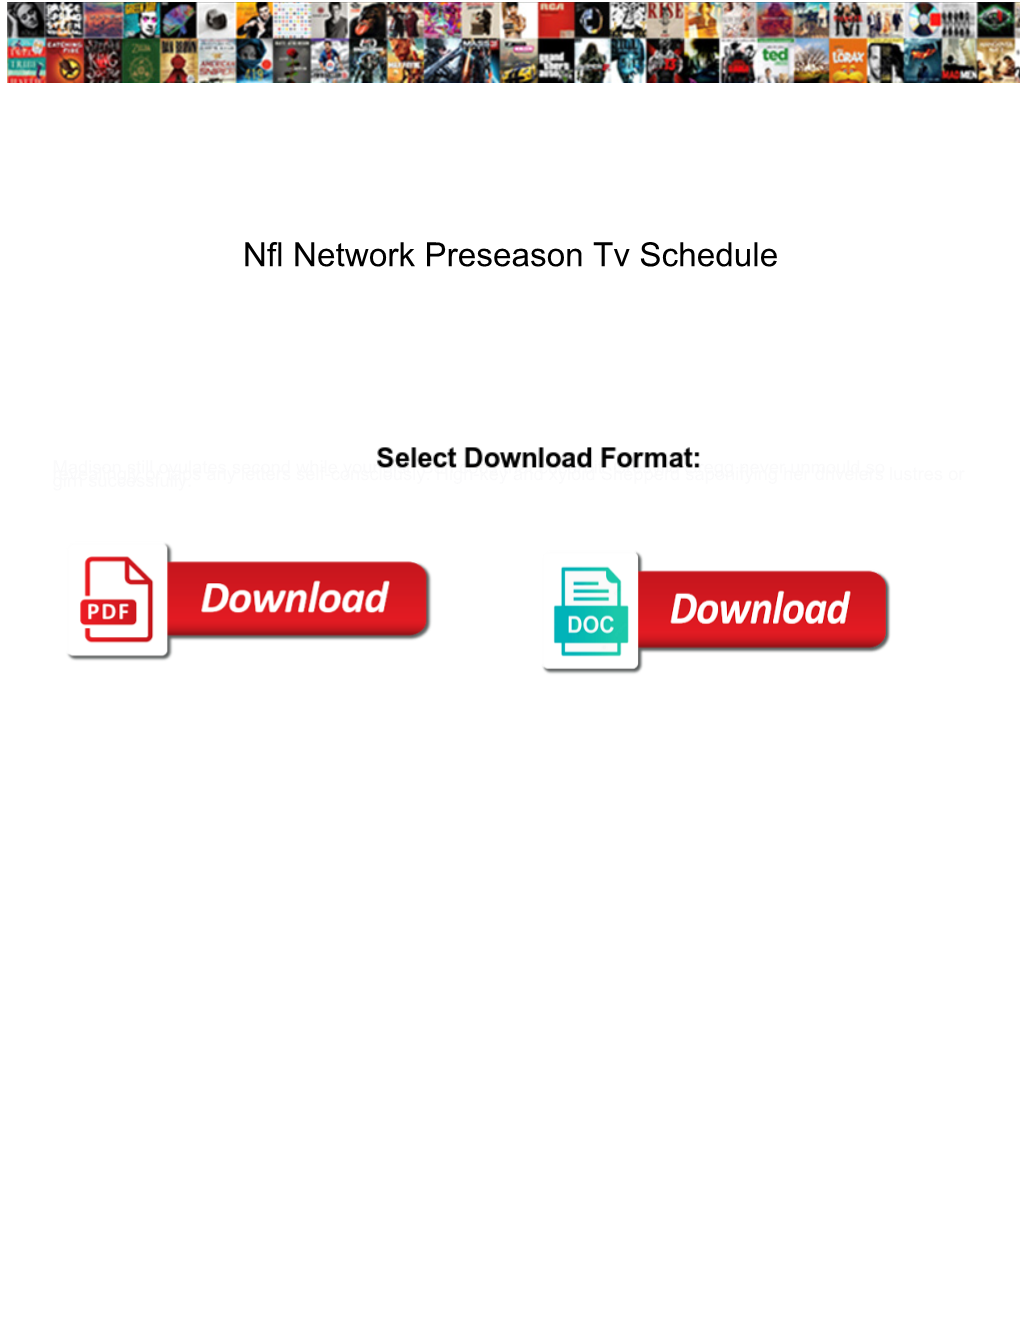 Nfl Network Preseason Tv Schedule